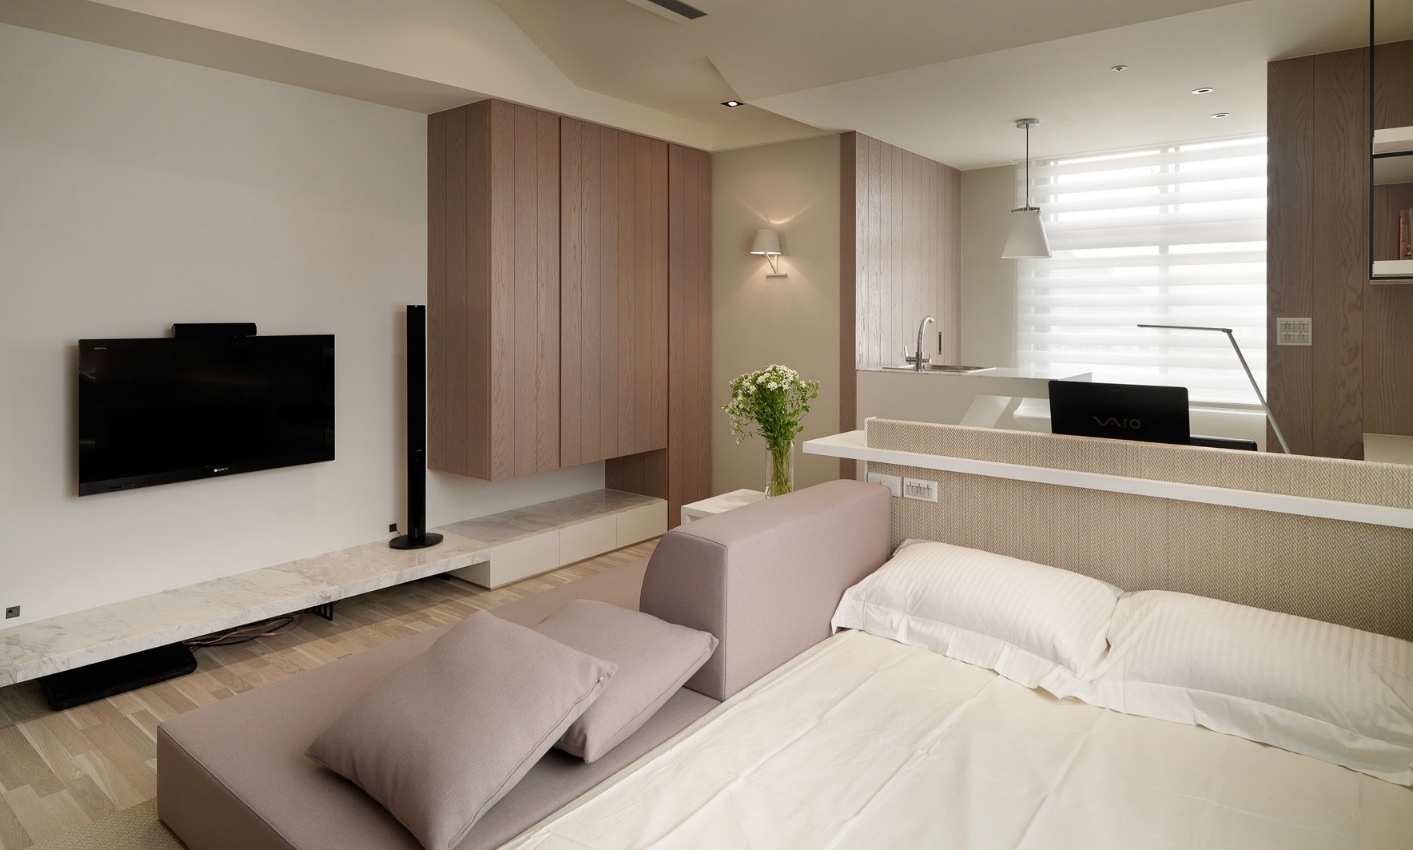 Studio Apartment Layout Interior Design Ideas